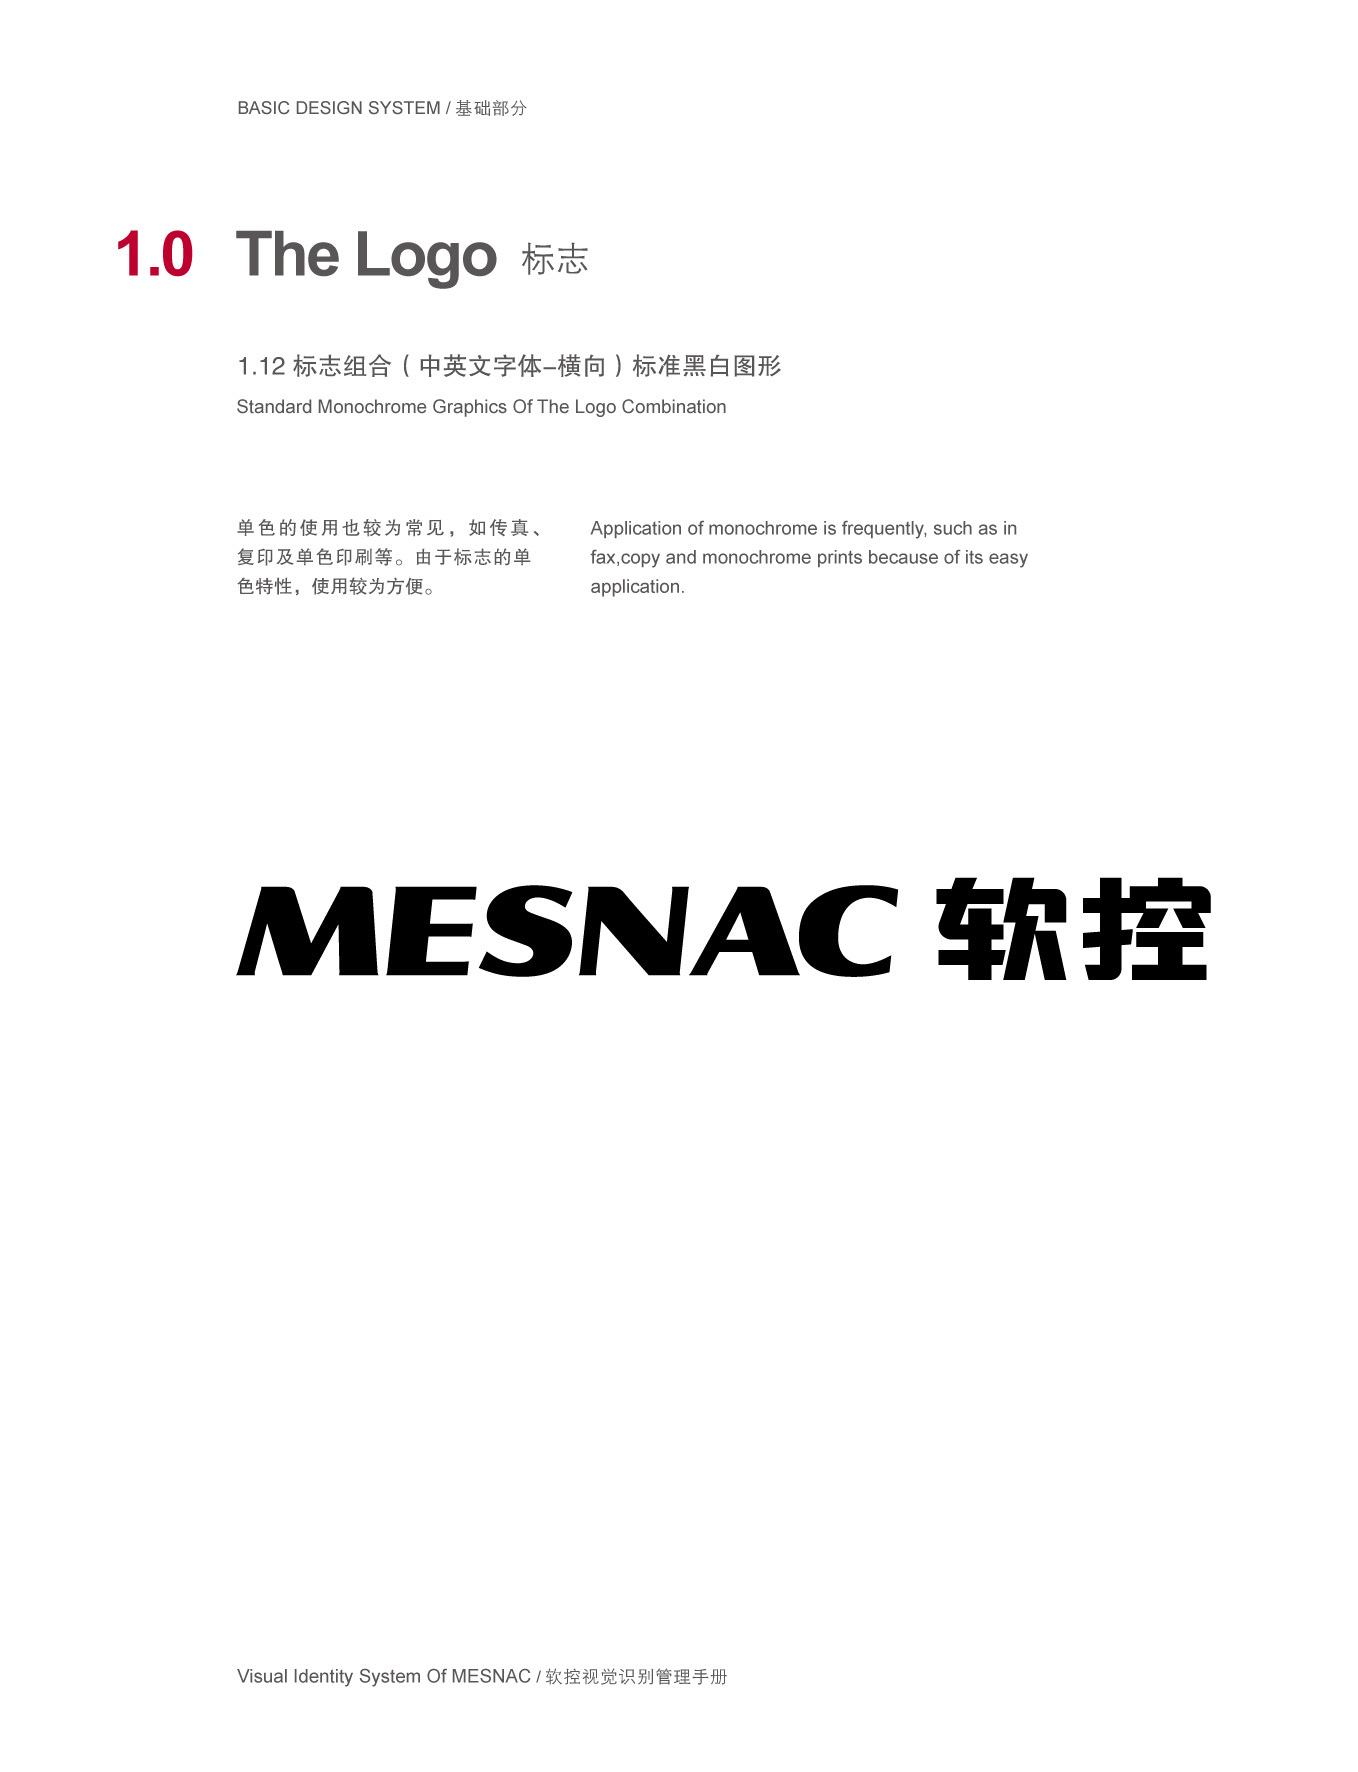 上市公司-軟控集團品牌logo及VI設計圖11